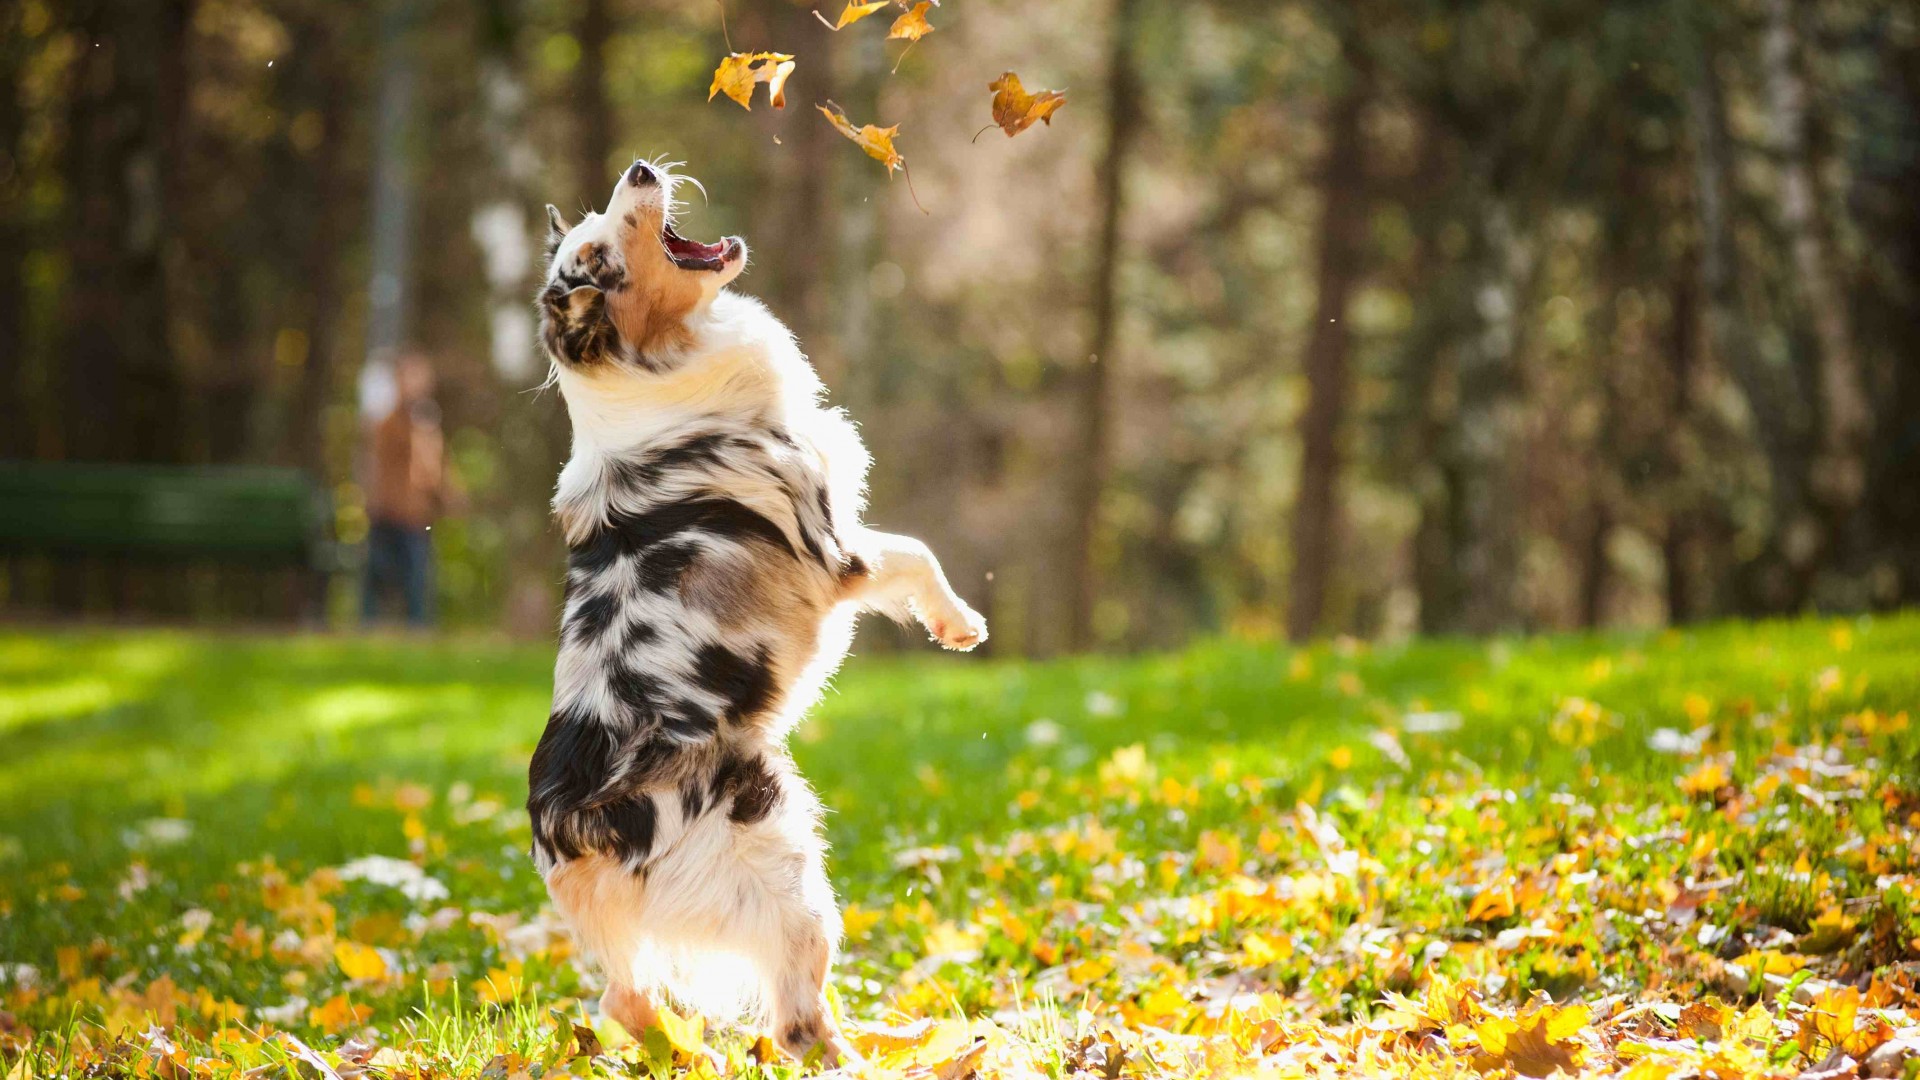 собака, пес, собачка, щенок, прыгает, листья, осень, питомец, зеленая трава, парк, Dog, puppy, jumping, leaves, autumn, pet, green grass, park (horizontal)